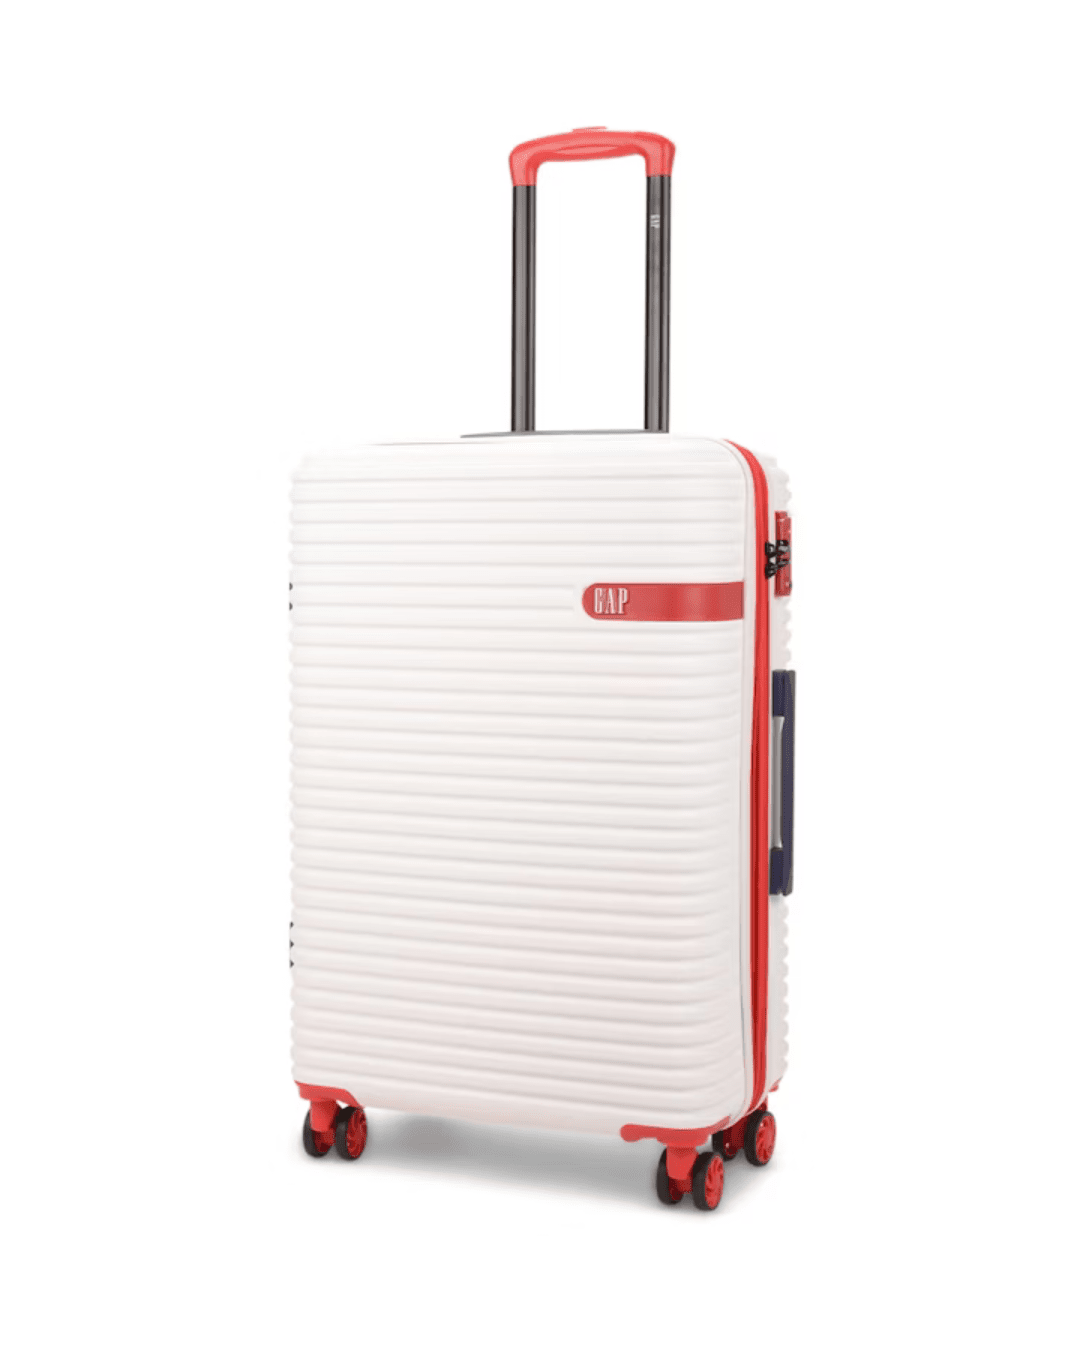 Gap 67cm Hardside Checked Suitcase White